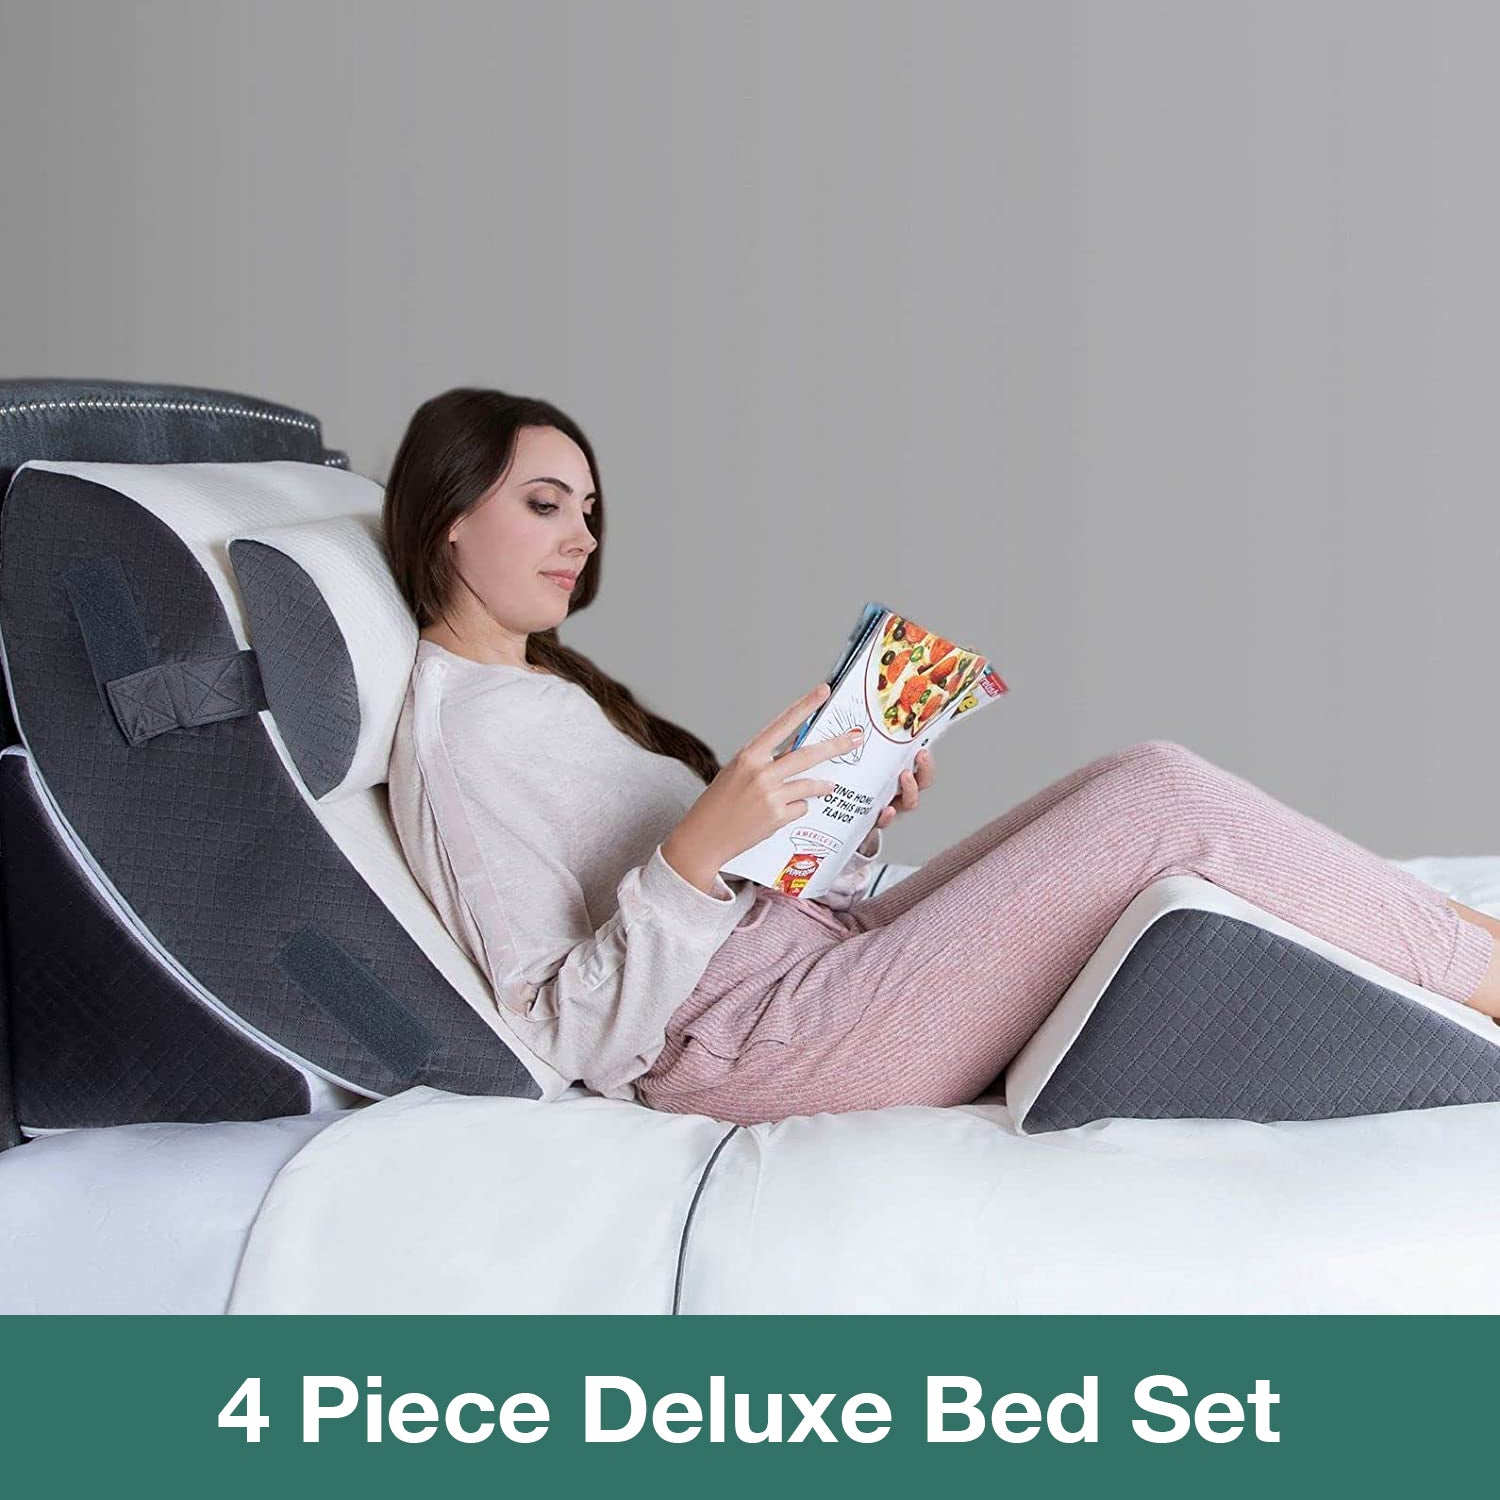 4 Piece Deluxe Bed Set